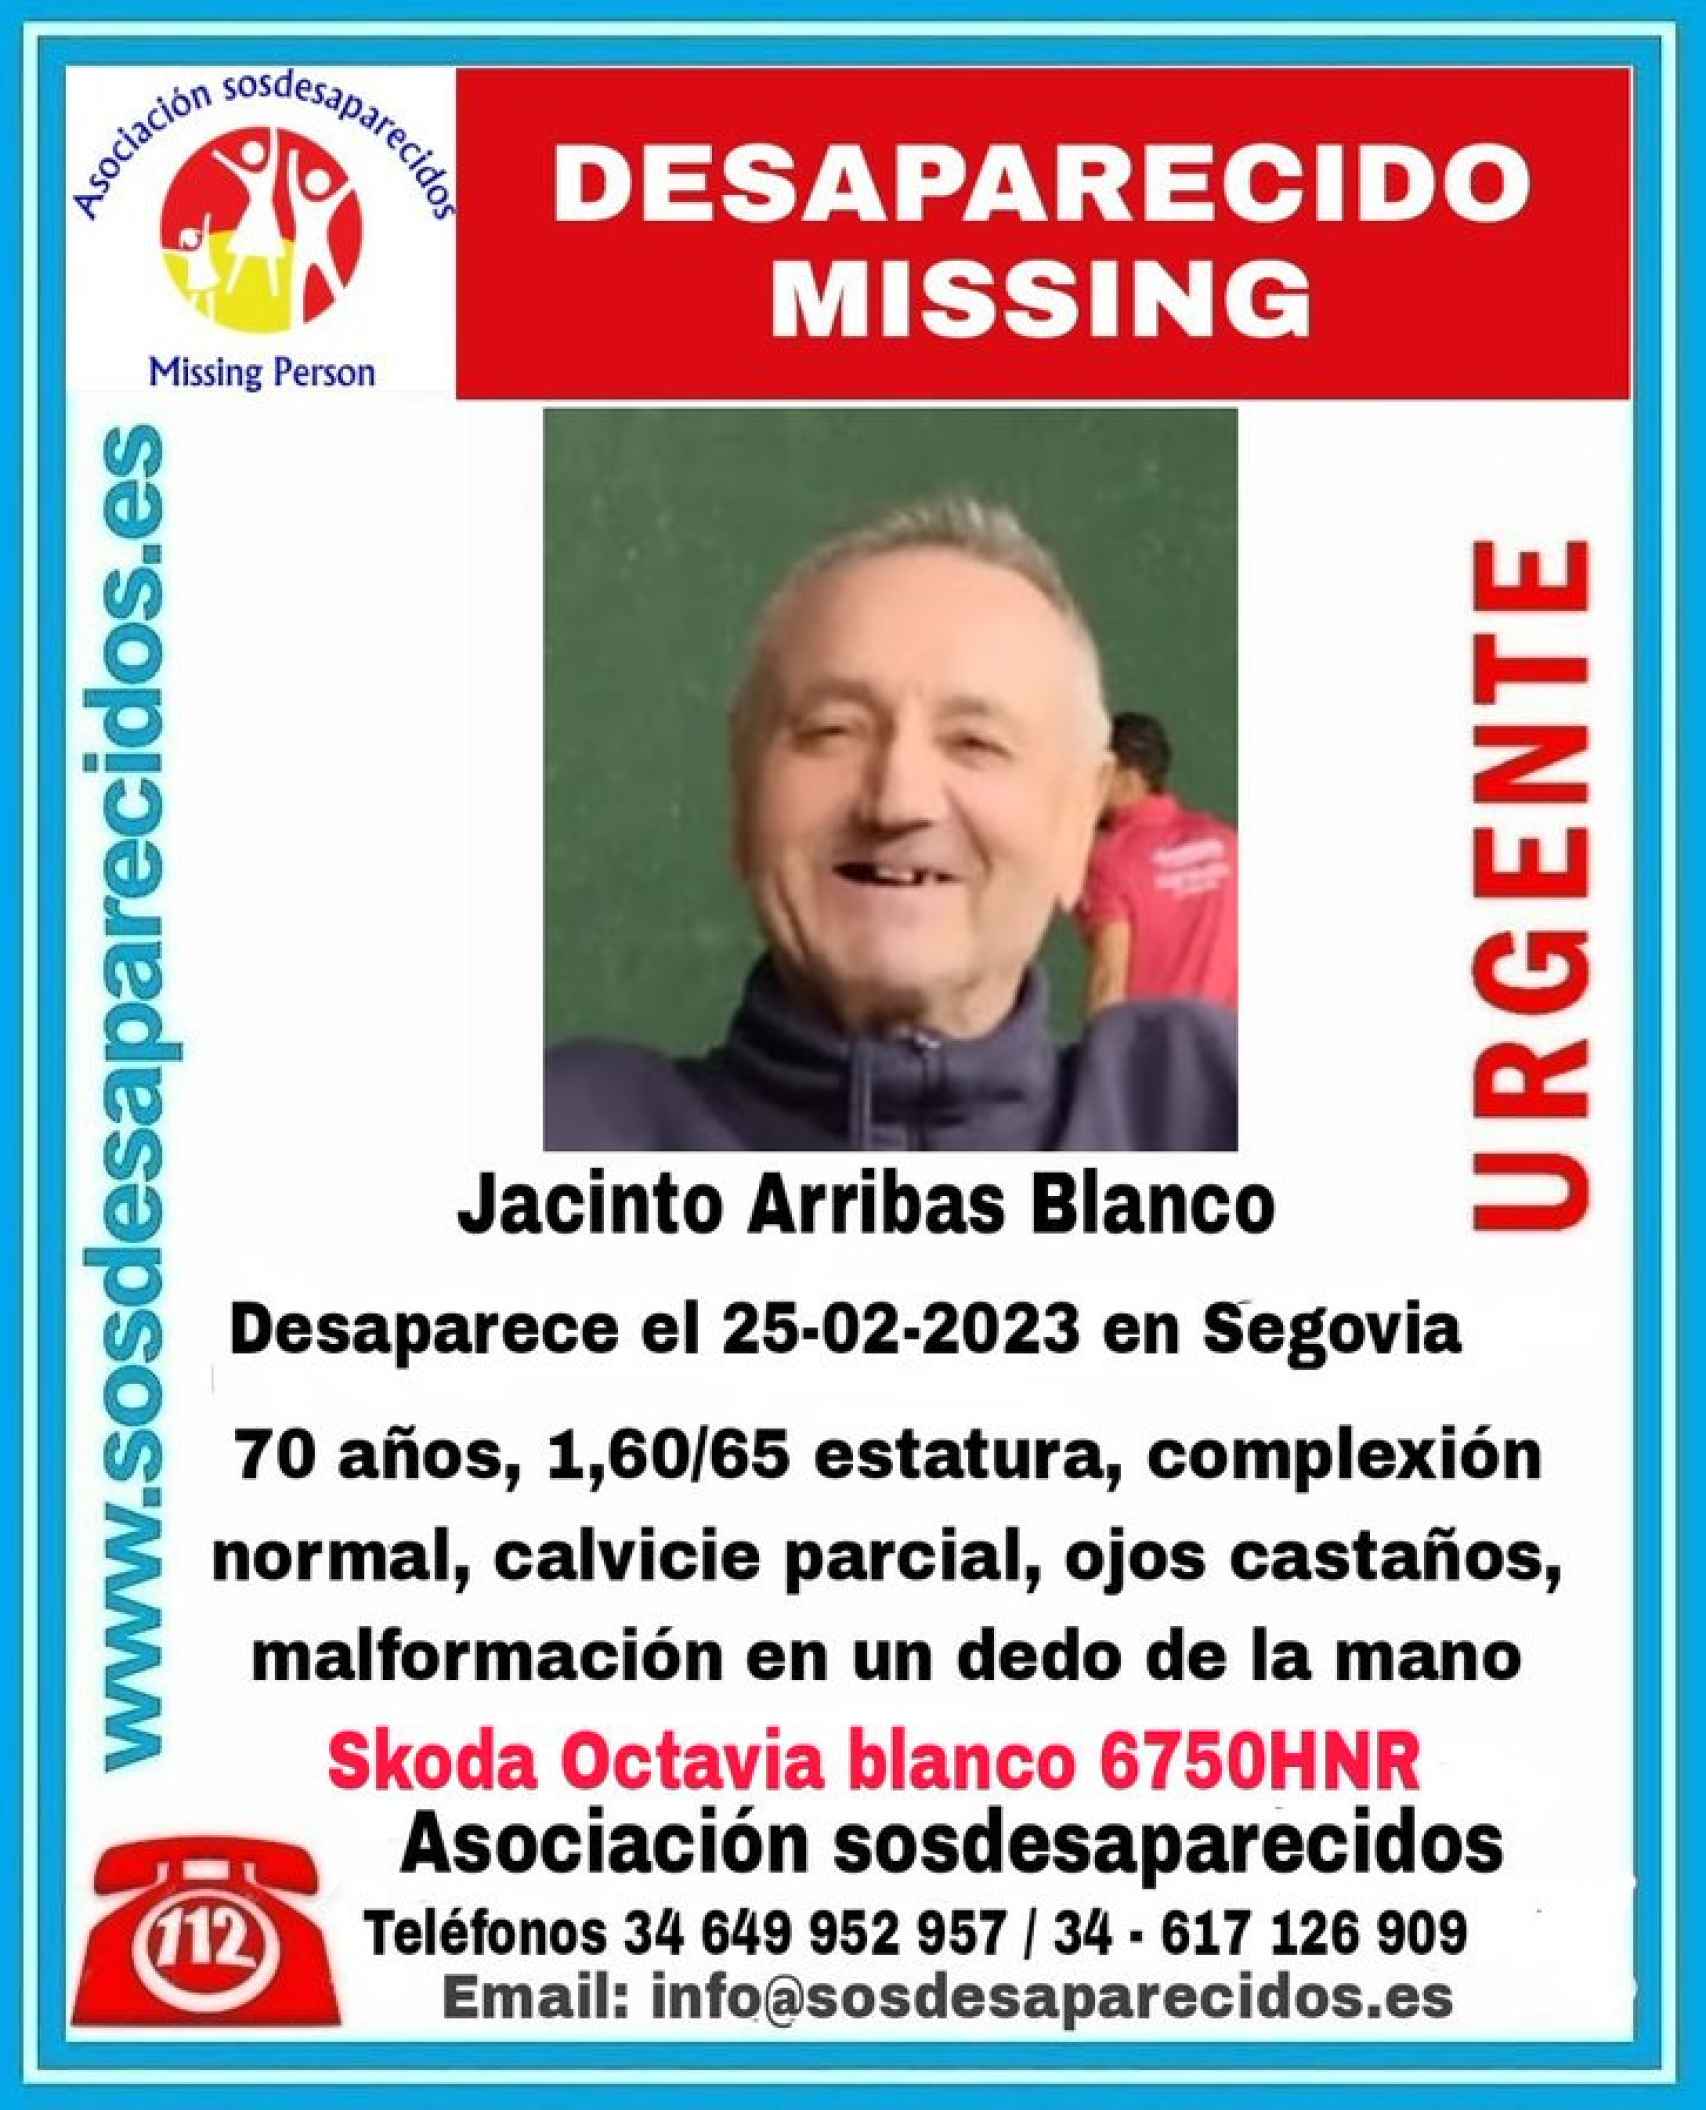 Jacinto Arribas Blanco, el hombre desaparecido en Segovia